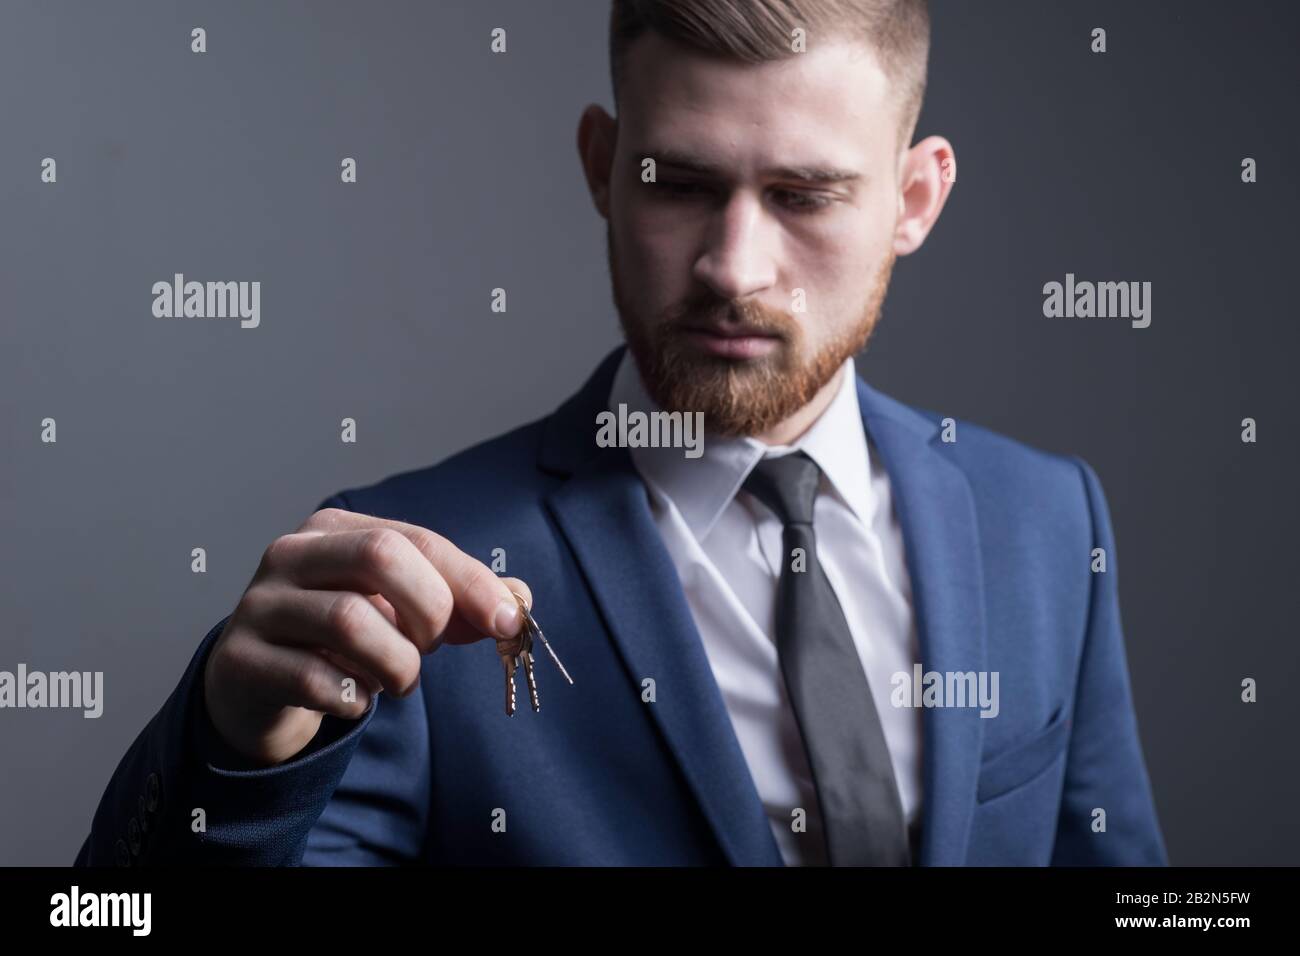 Nahaufnahme eines jungen bärtigen, fünfundzwanzigjährigen Mannes in einem Business-Anzug, der Schlüssel in der Hand hält. Auf grauem Hintergrund. Konzept. Käuflich Stockfoto